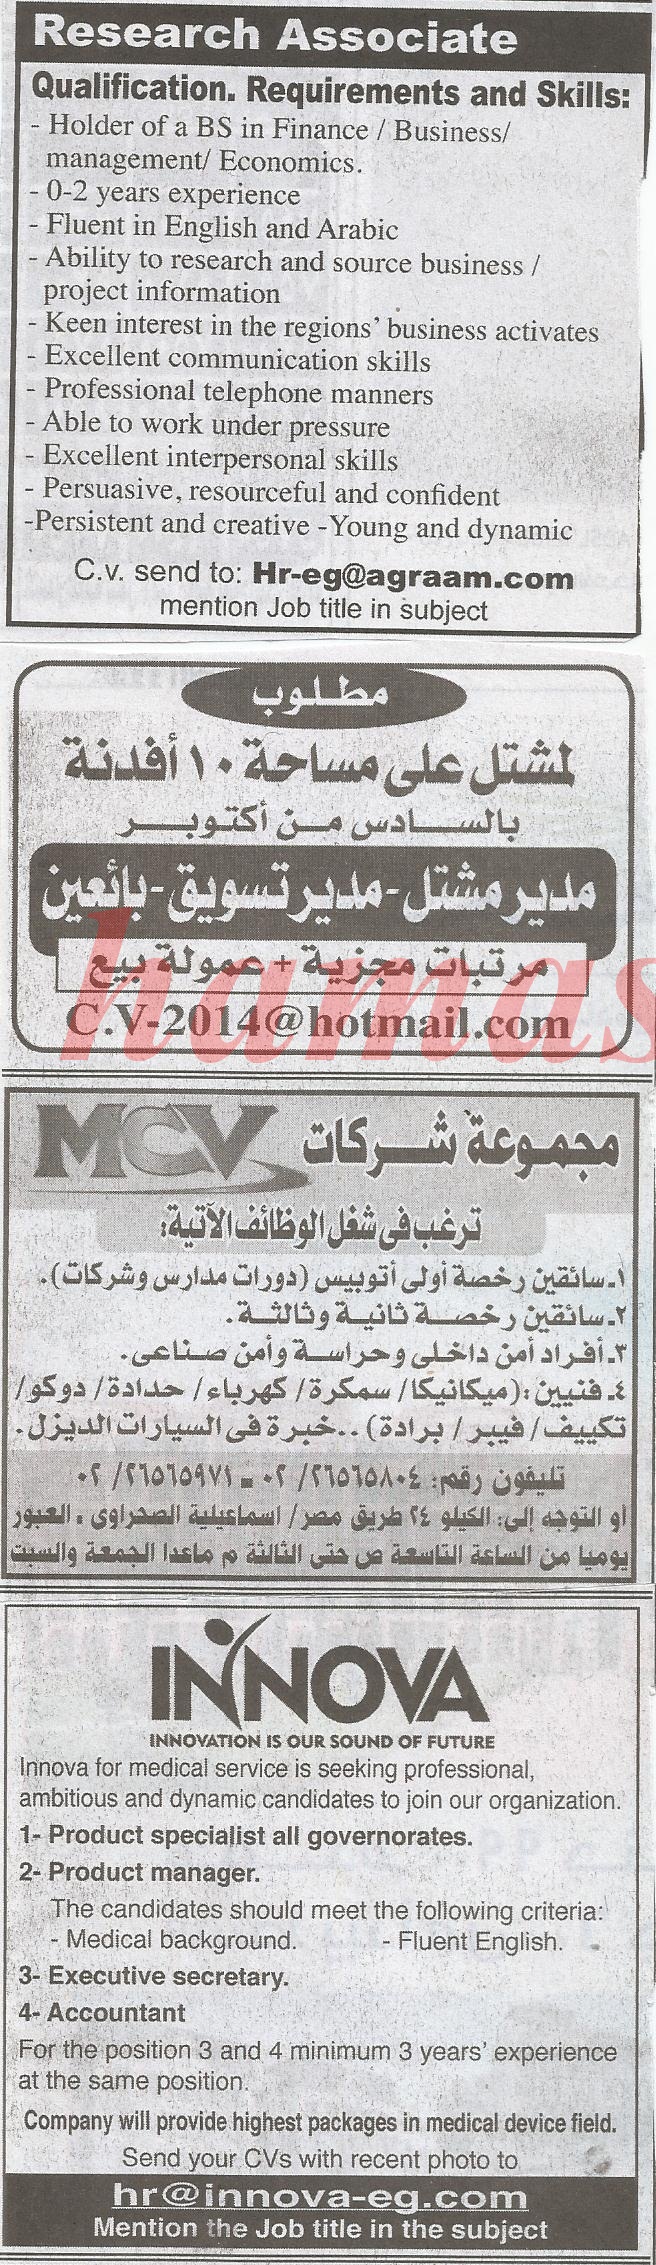 وظائف جريدة الاهرام اليوم الخميس 30-1-2014 , وظائف خالية من الاهرام 30 يناير 2014